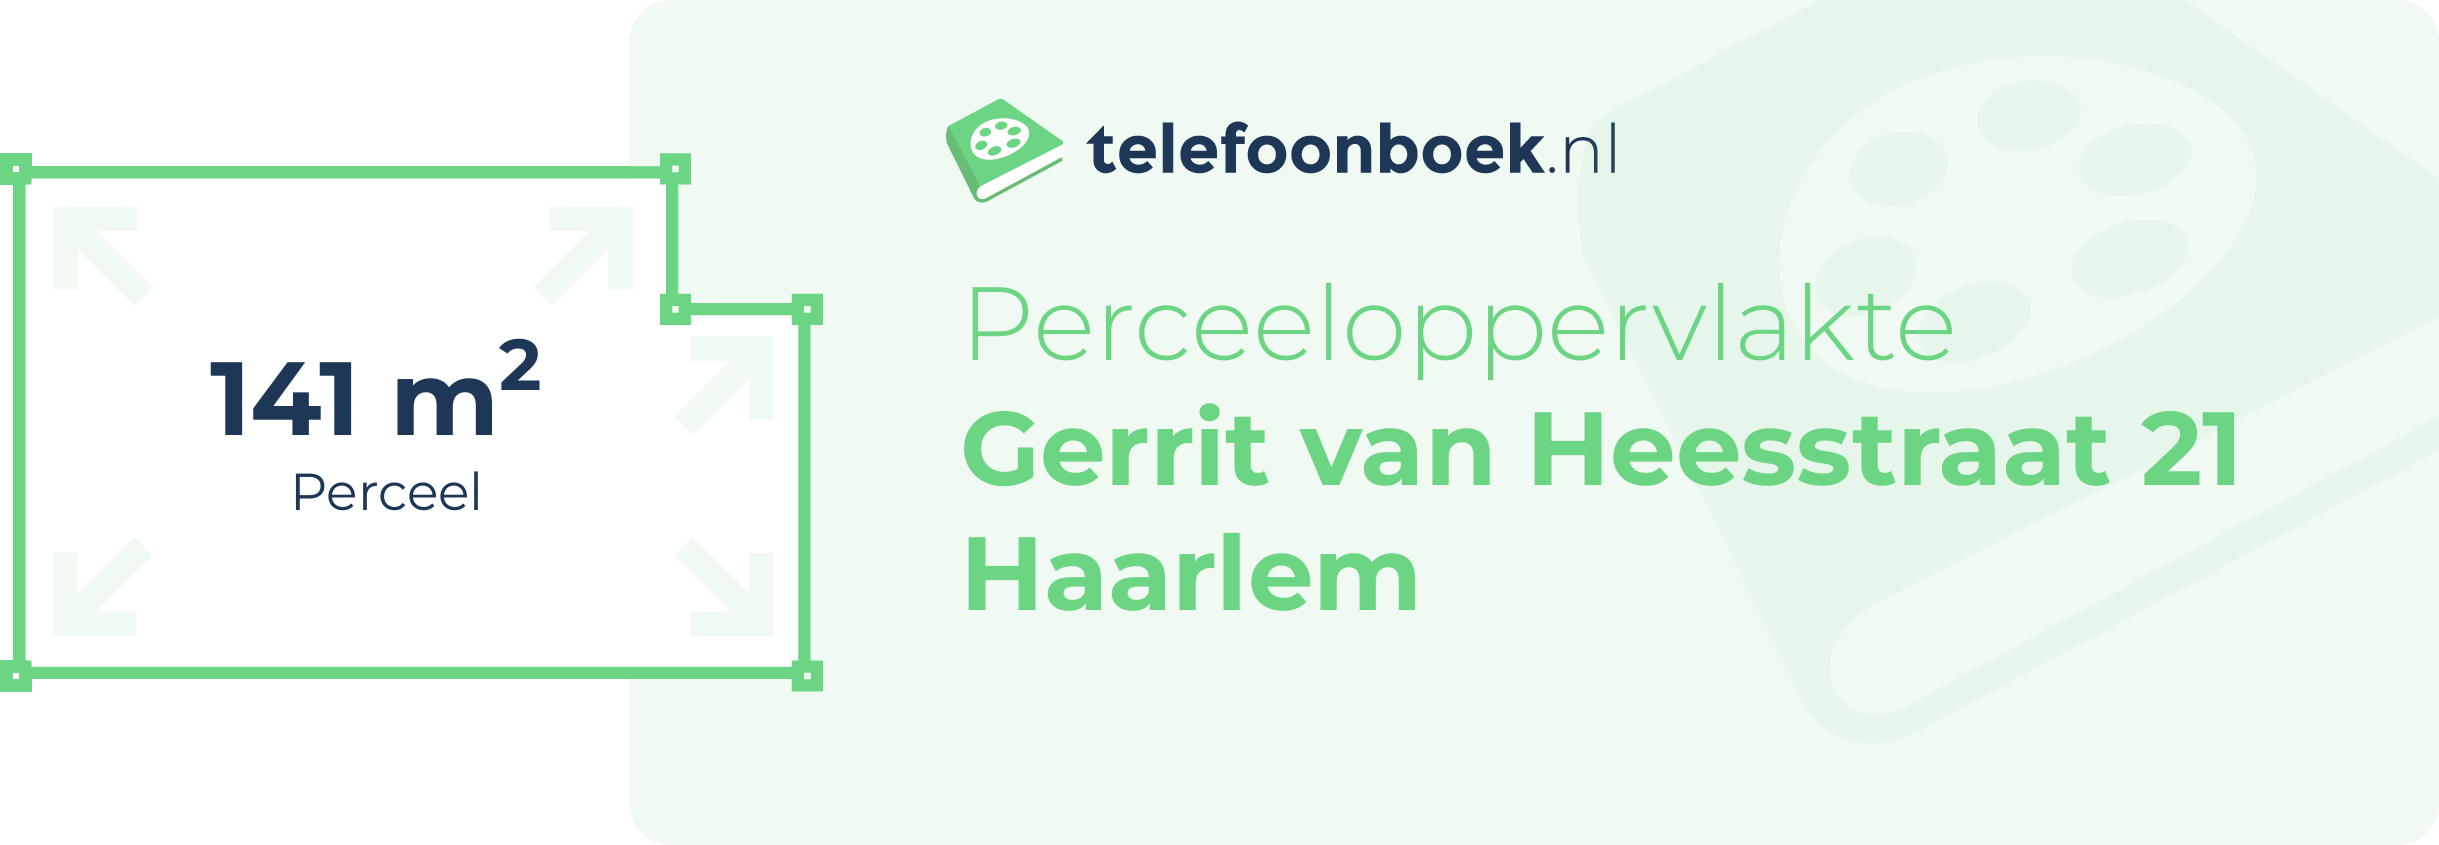 Perceeloppervlakte Gerrit Van Heesstraat 21 Haarlem